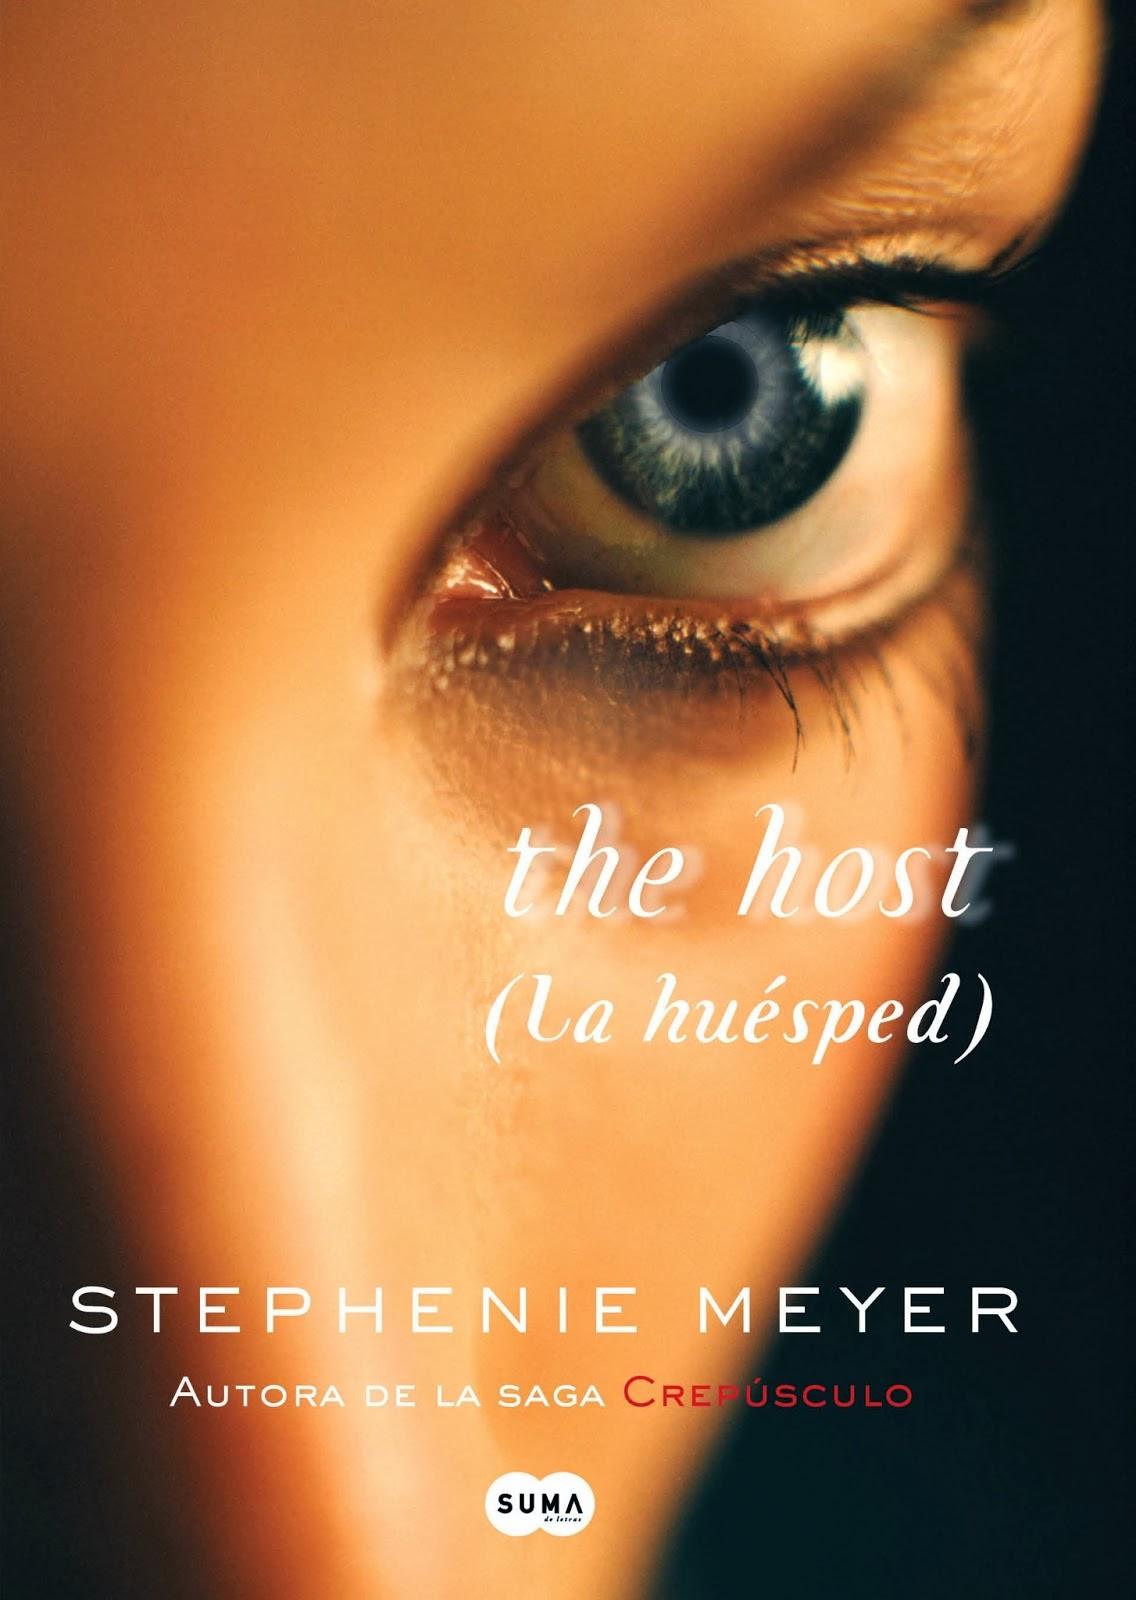 La huésped, Stephenie Meyer